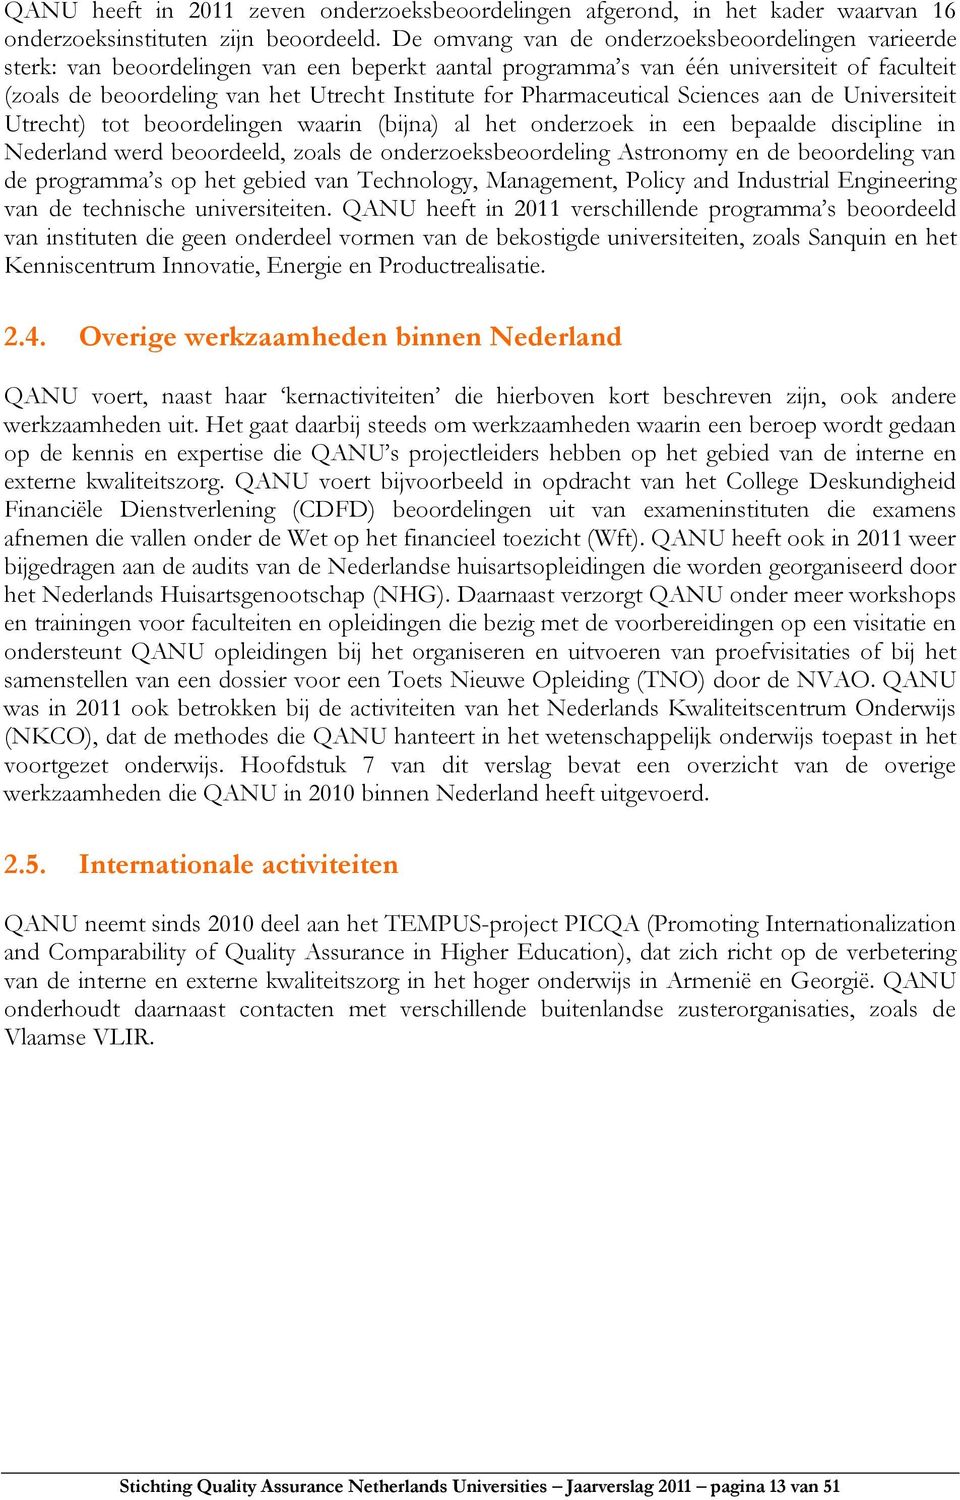 Pharmaceutical Sciences aan de Universiteit Utrecht) tot beoordelingen waarin (bijna) al het onderzoek in een bepaalde discipline in Nederland werd beoordeeld, zoals de onderzoeksbeoordeling